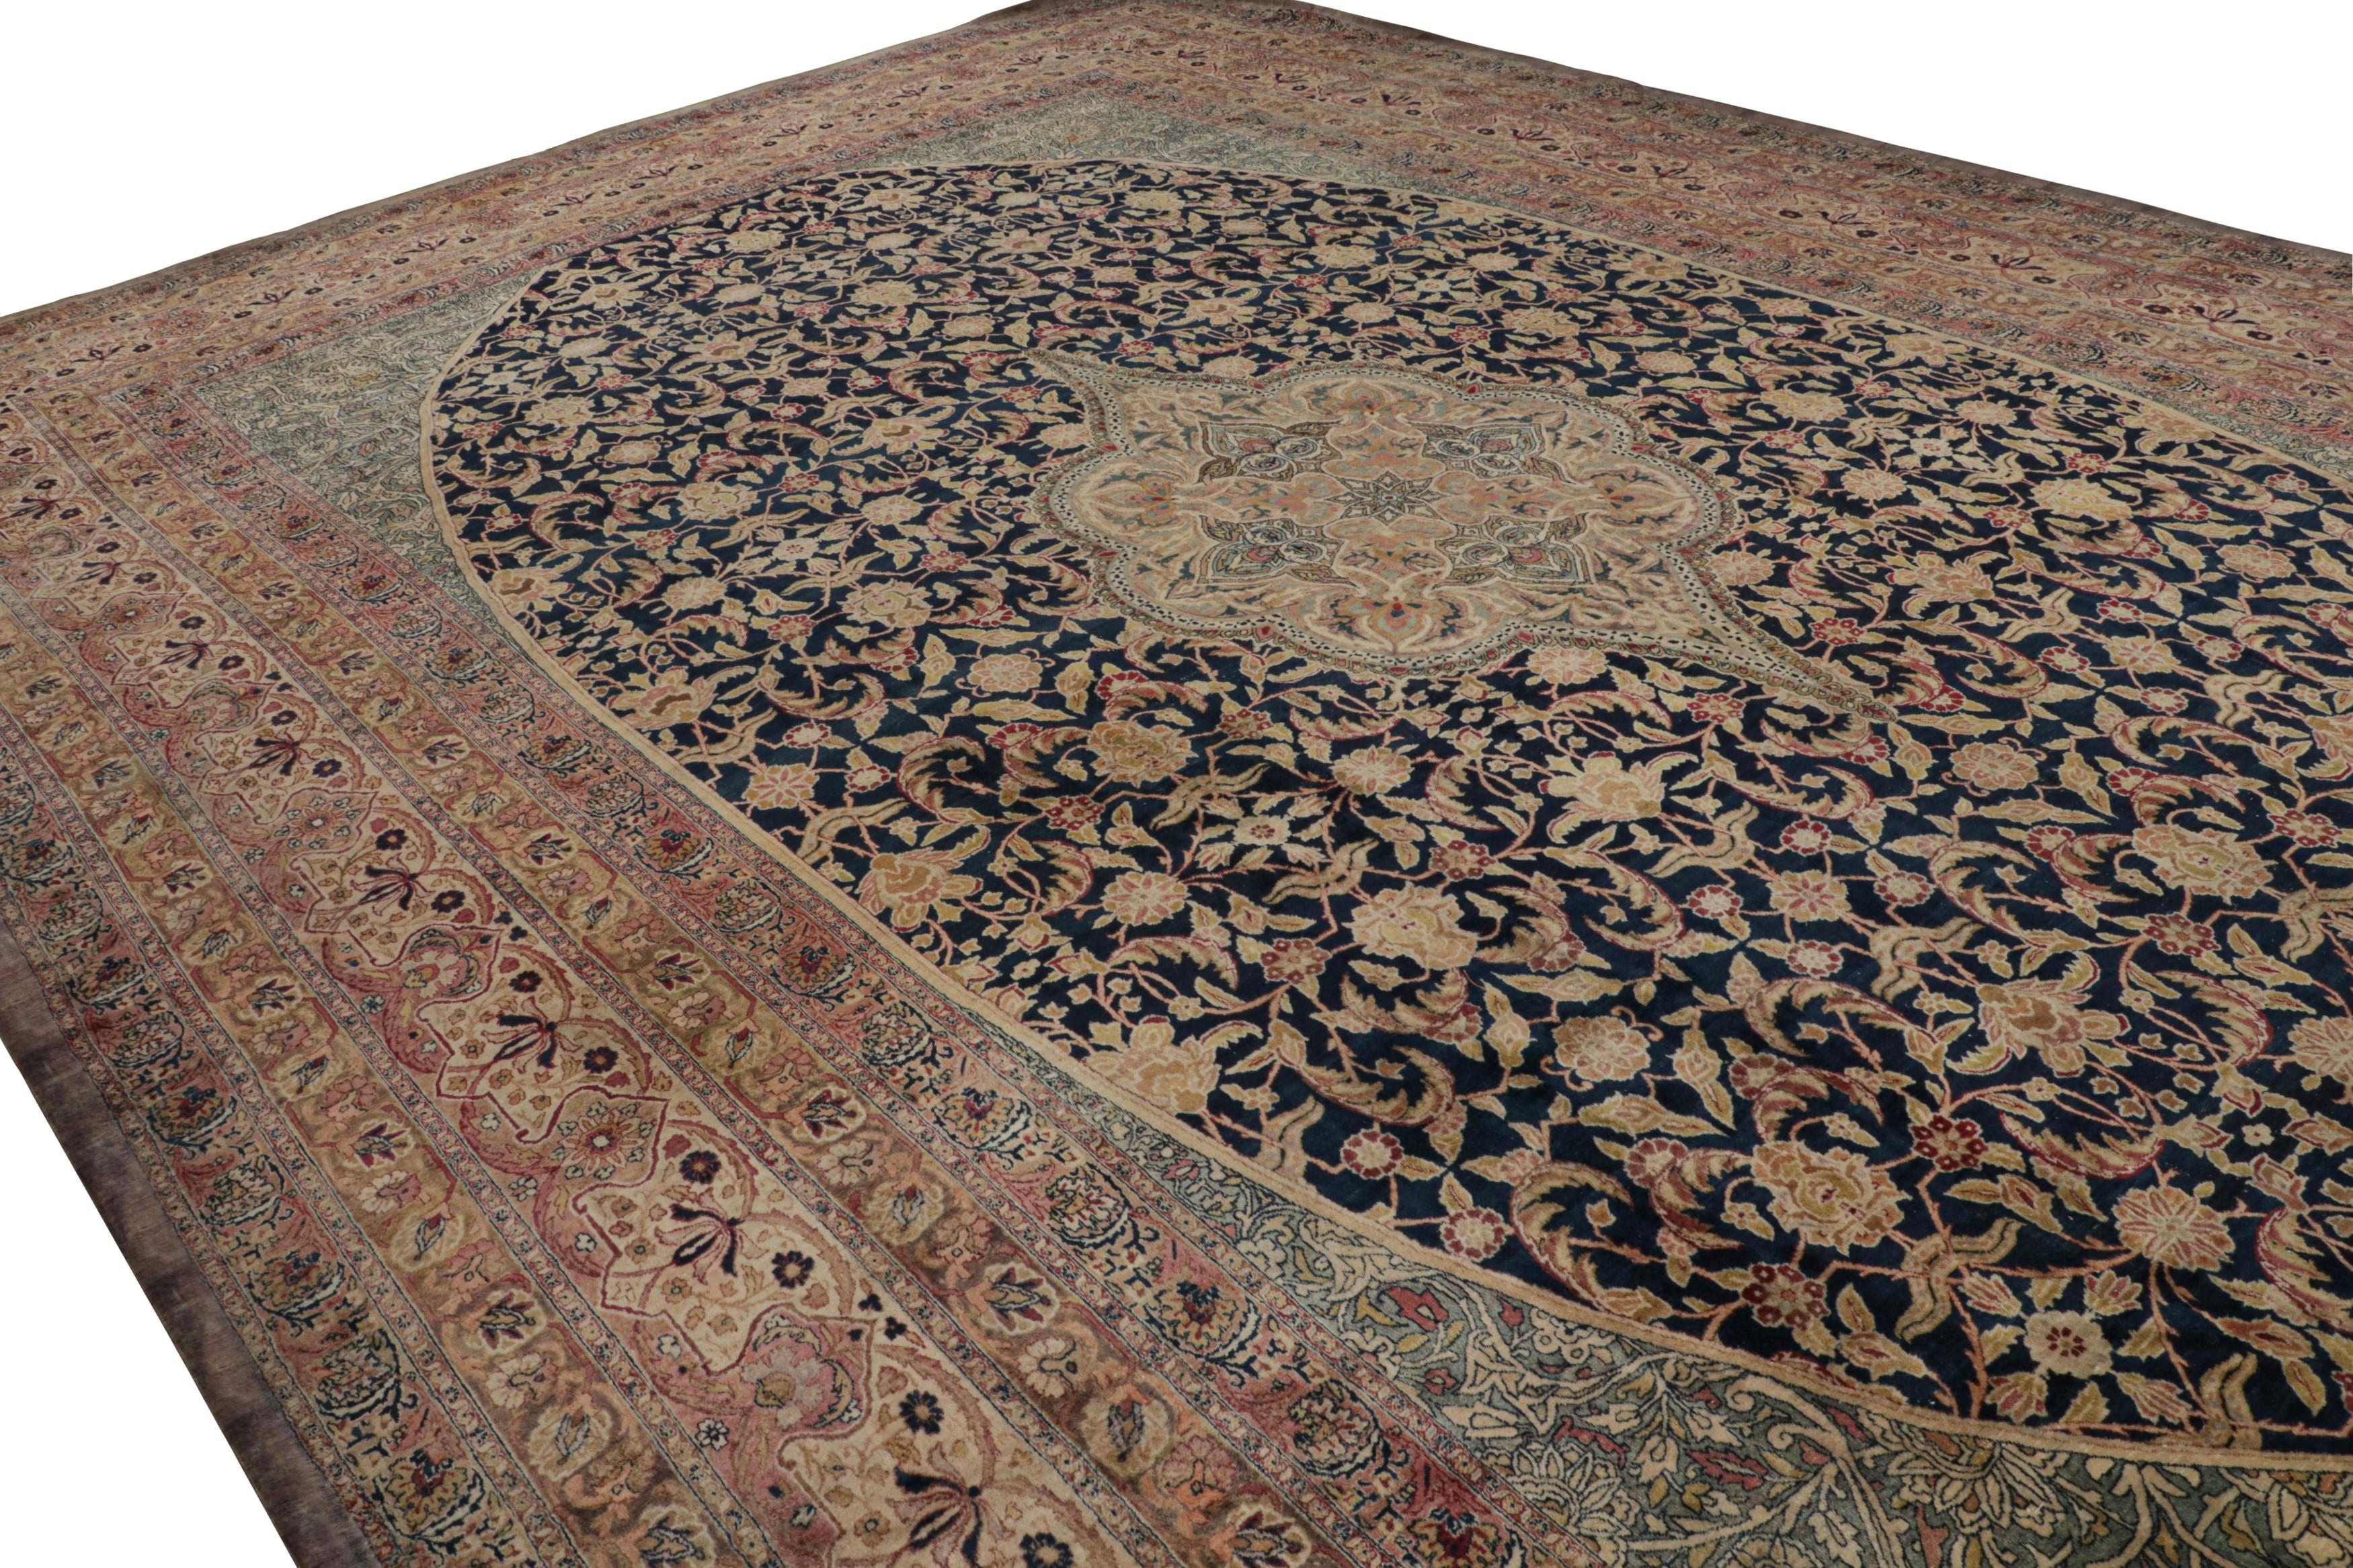 Tissé à la main en laine, cet ancien tapis persan Kerman Lavar 15x23, datant des années 1920-1930, est un chef-d'œuvre de l'une des traditions de tissage les plus recherchées dans le domaine des tapis de ville persans. 

Sur le Design : 

Les